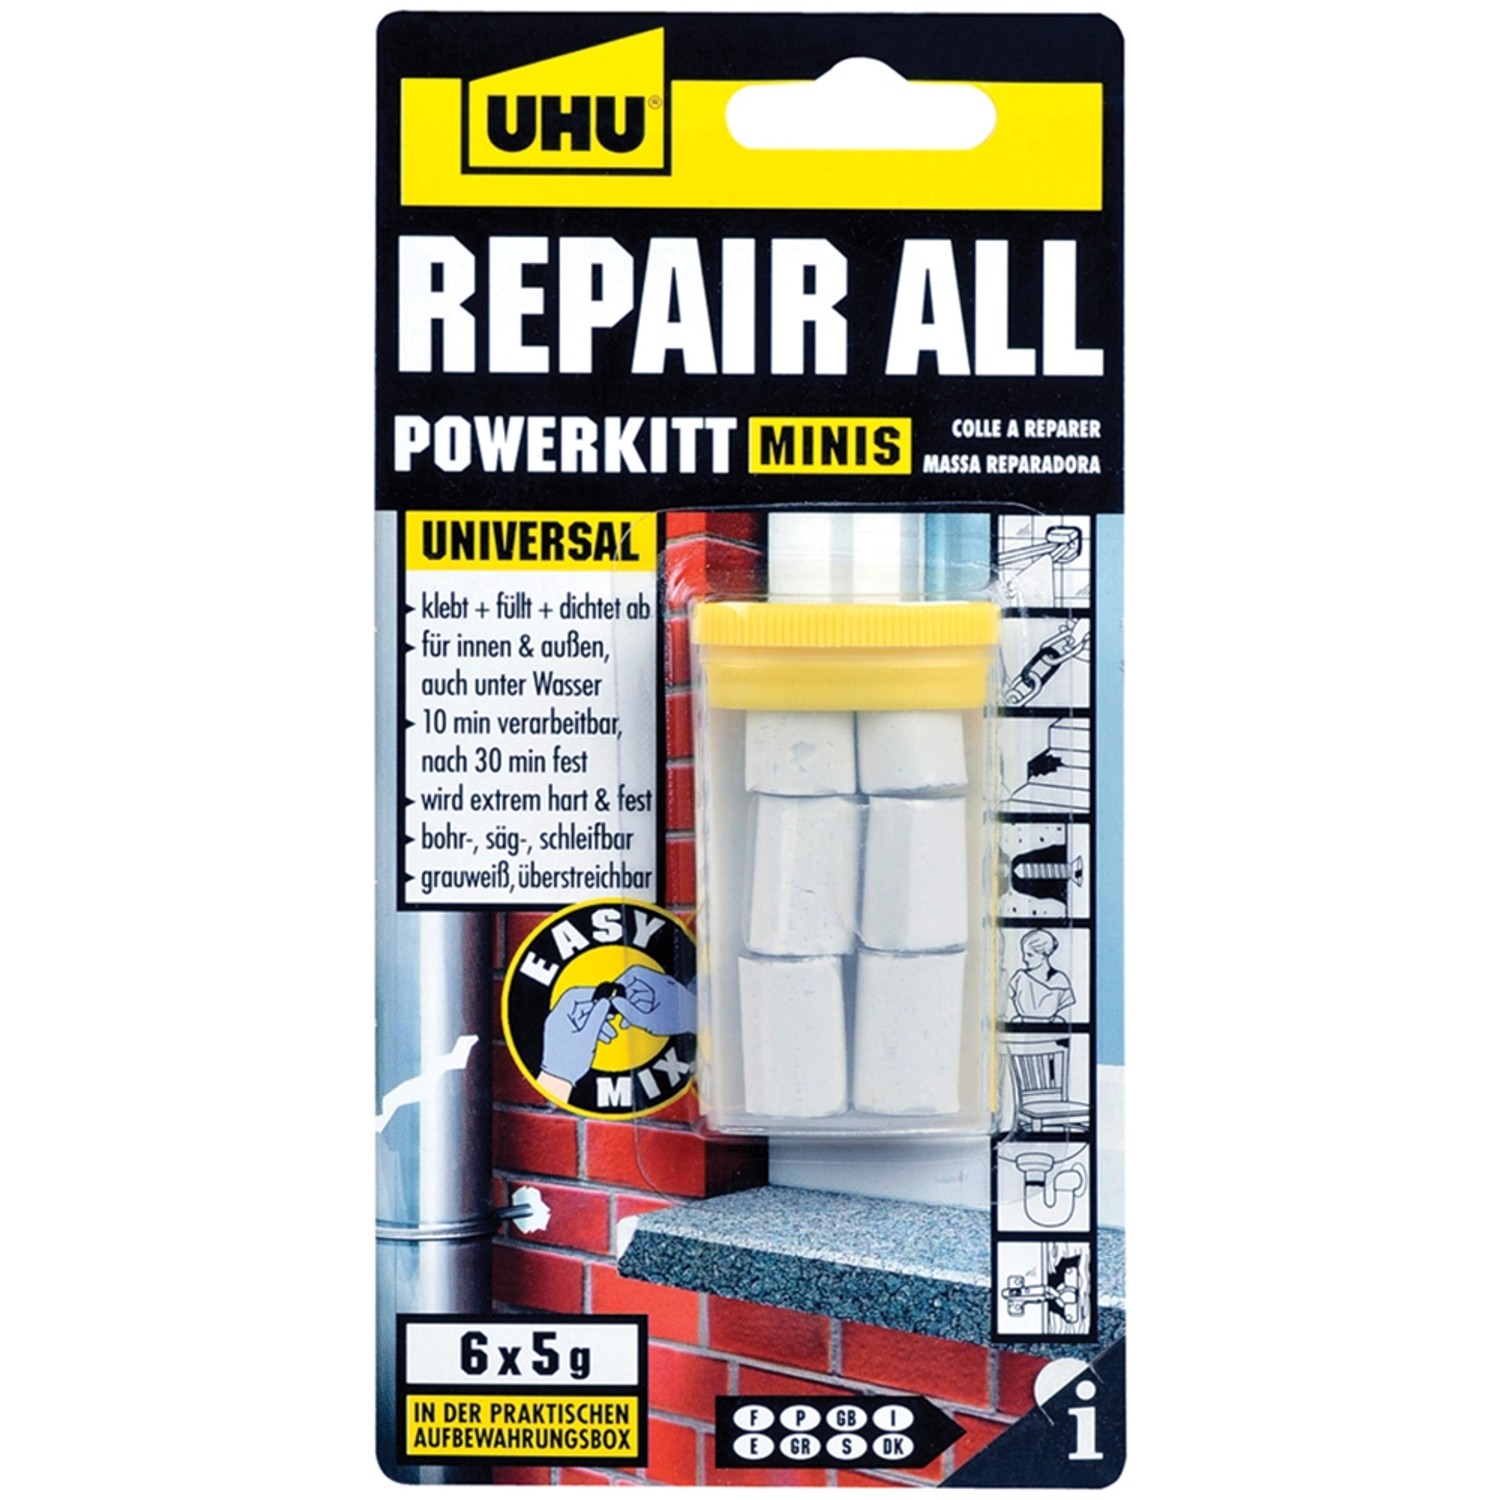 Uhu Repair All Powerkit Minis Universal Weiß 6 x 5 g von UHU